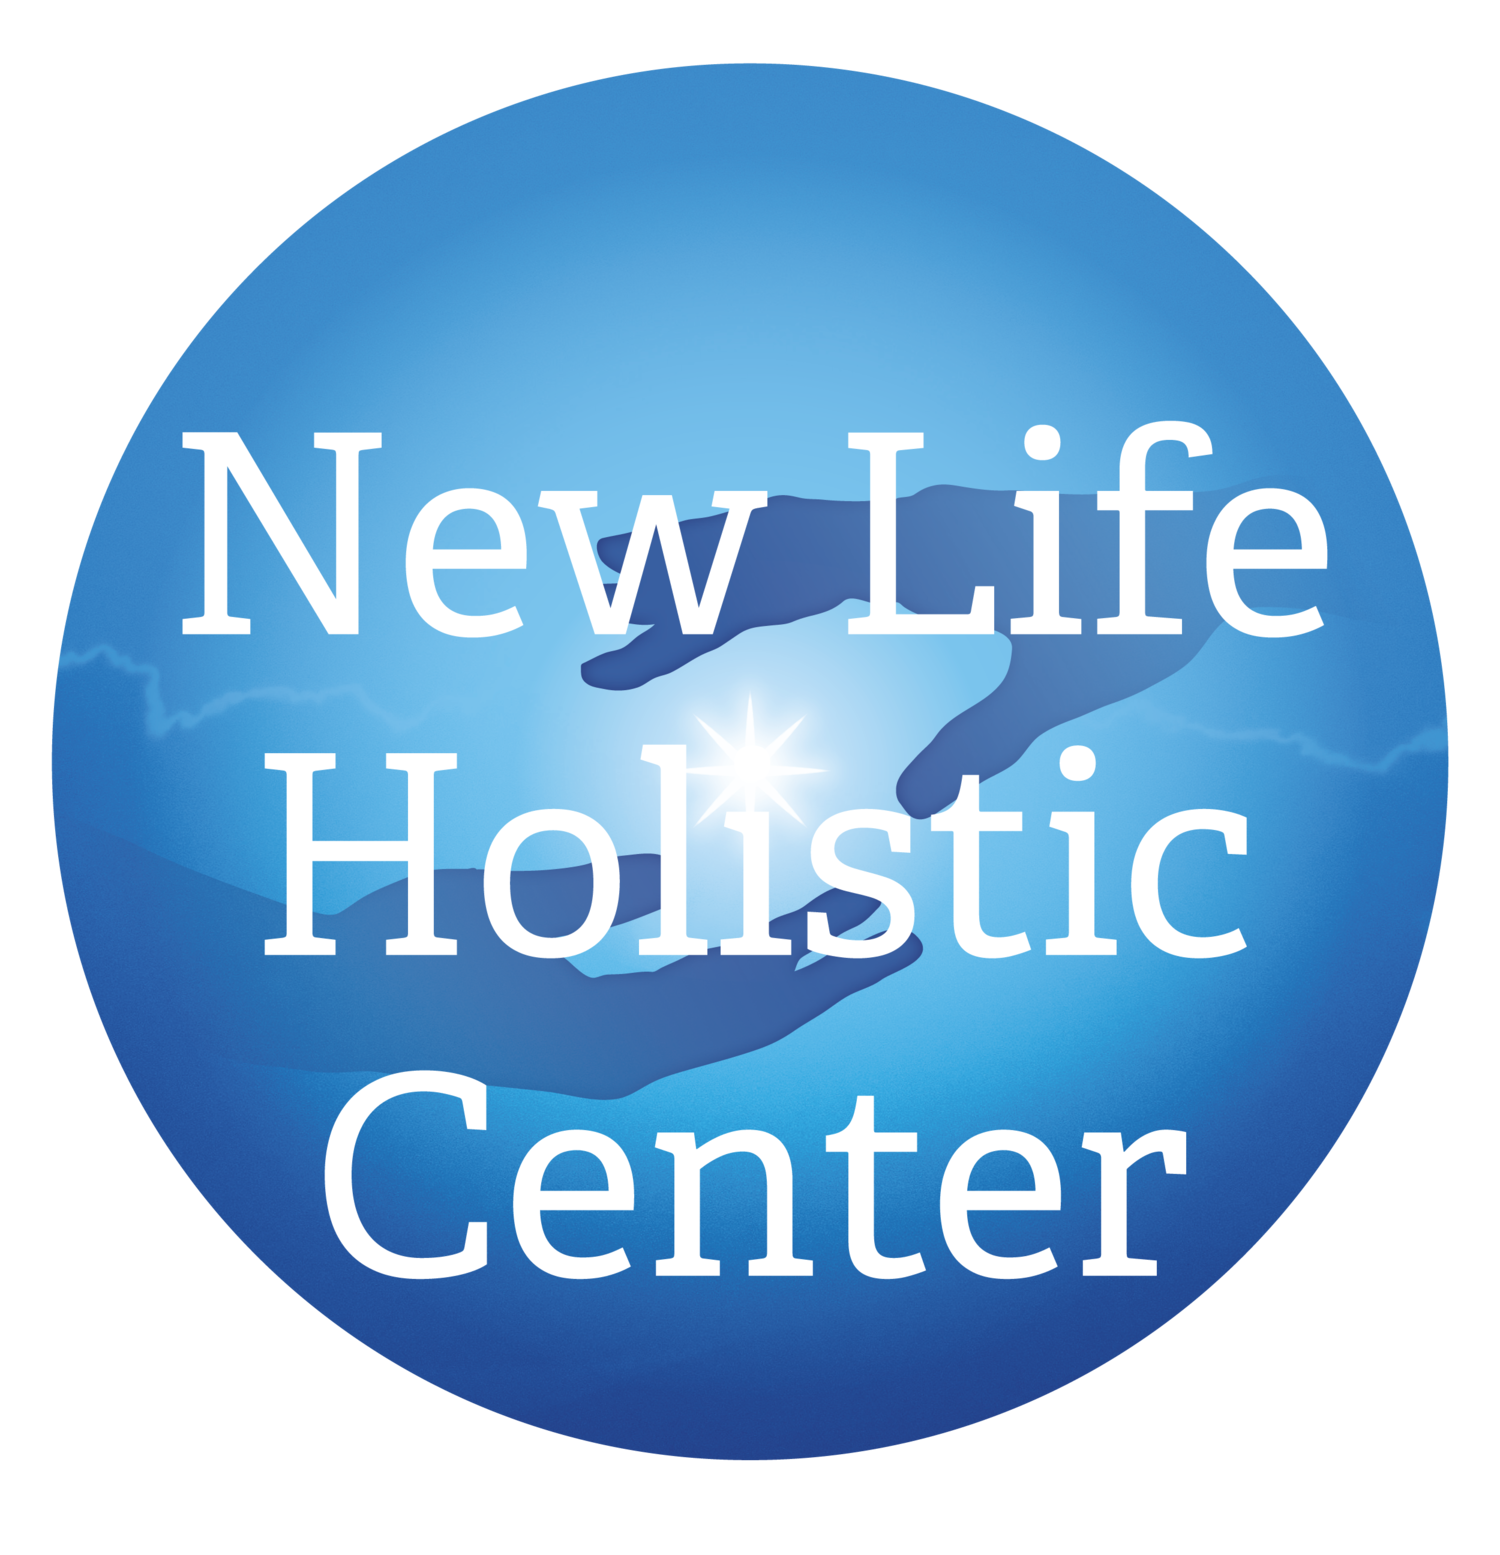 New Life Holistic Center